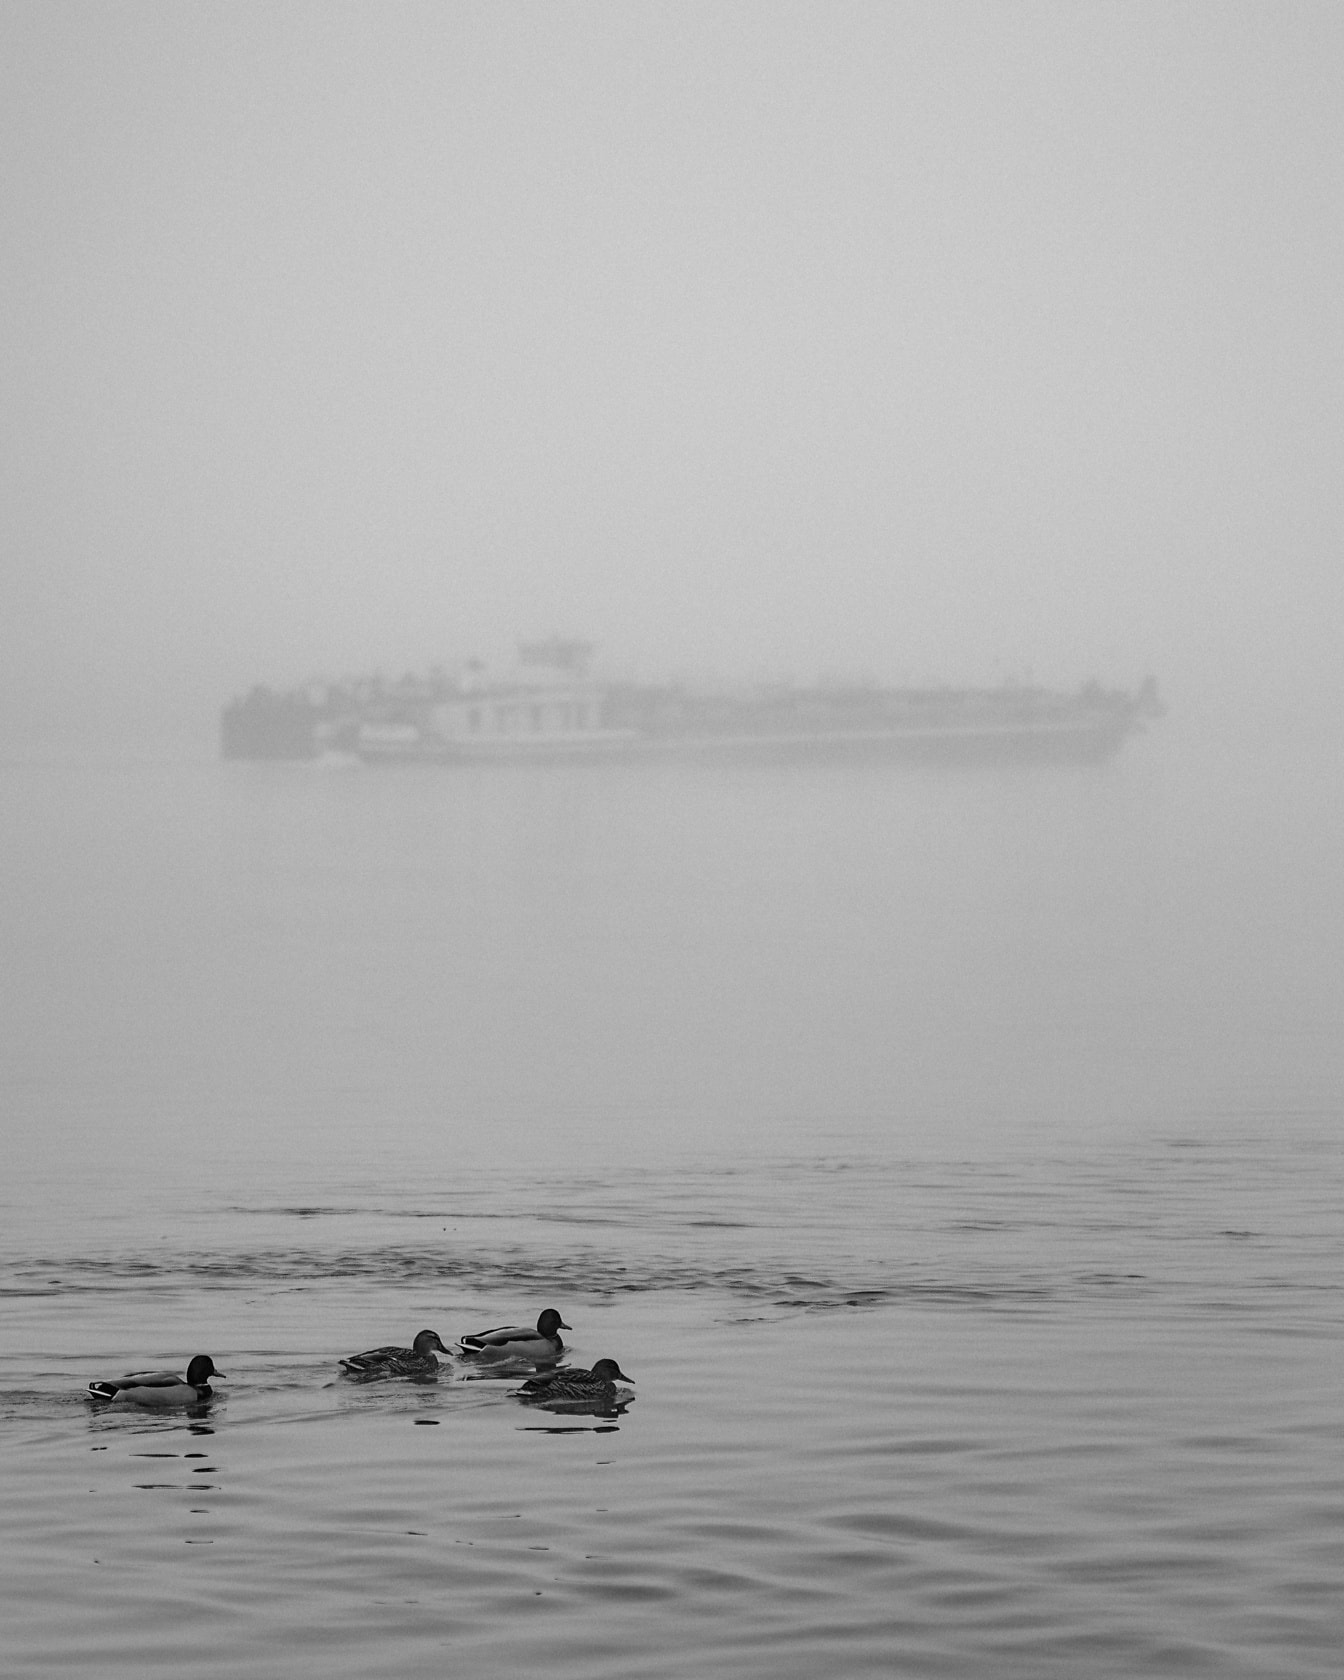 Eenden zwemmen in het water met schip in dichte mist op achtergrond